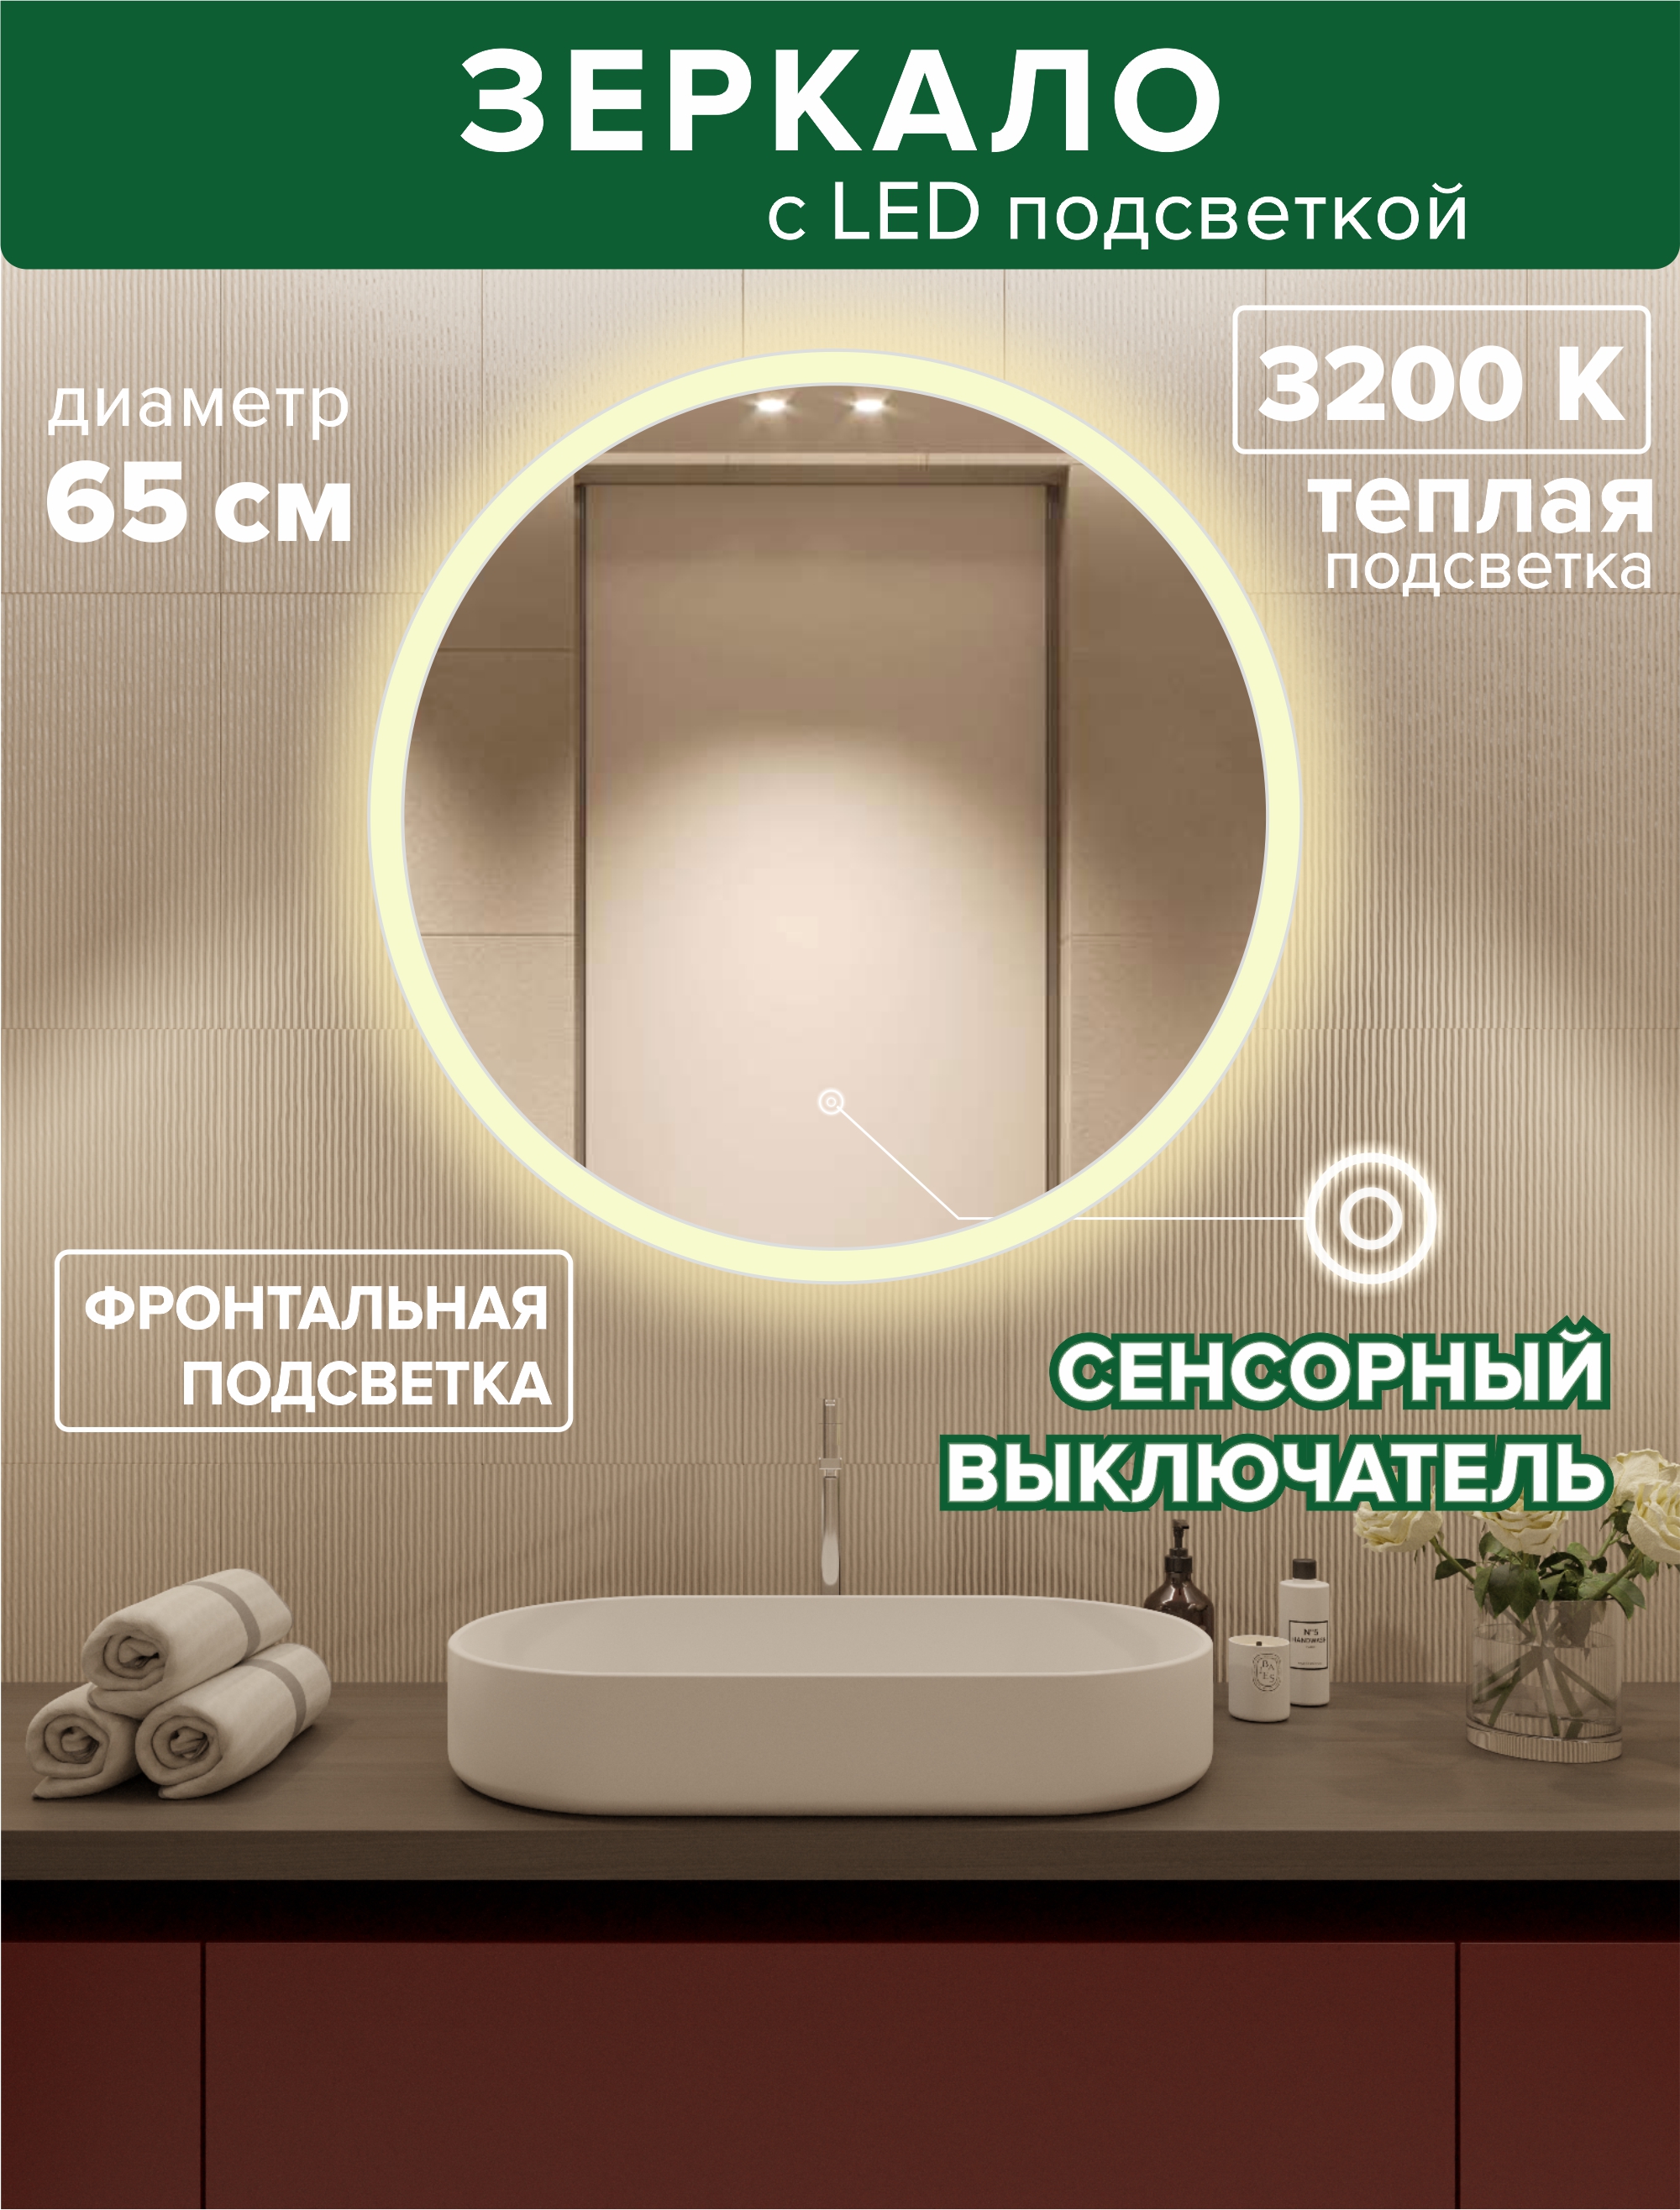 Зеркало для ванной Alfa Mirrors MSvet-65t фронтальная теплая подсветка 3200К, круглое 65см светодиодная гирлянда rich led 10 м 100 led 220 в соединяемая влагозащитный колпачок двойная изоляция теплая белая бронзовый провод rl s10c 220v c2bz ww